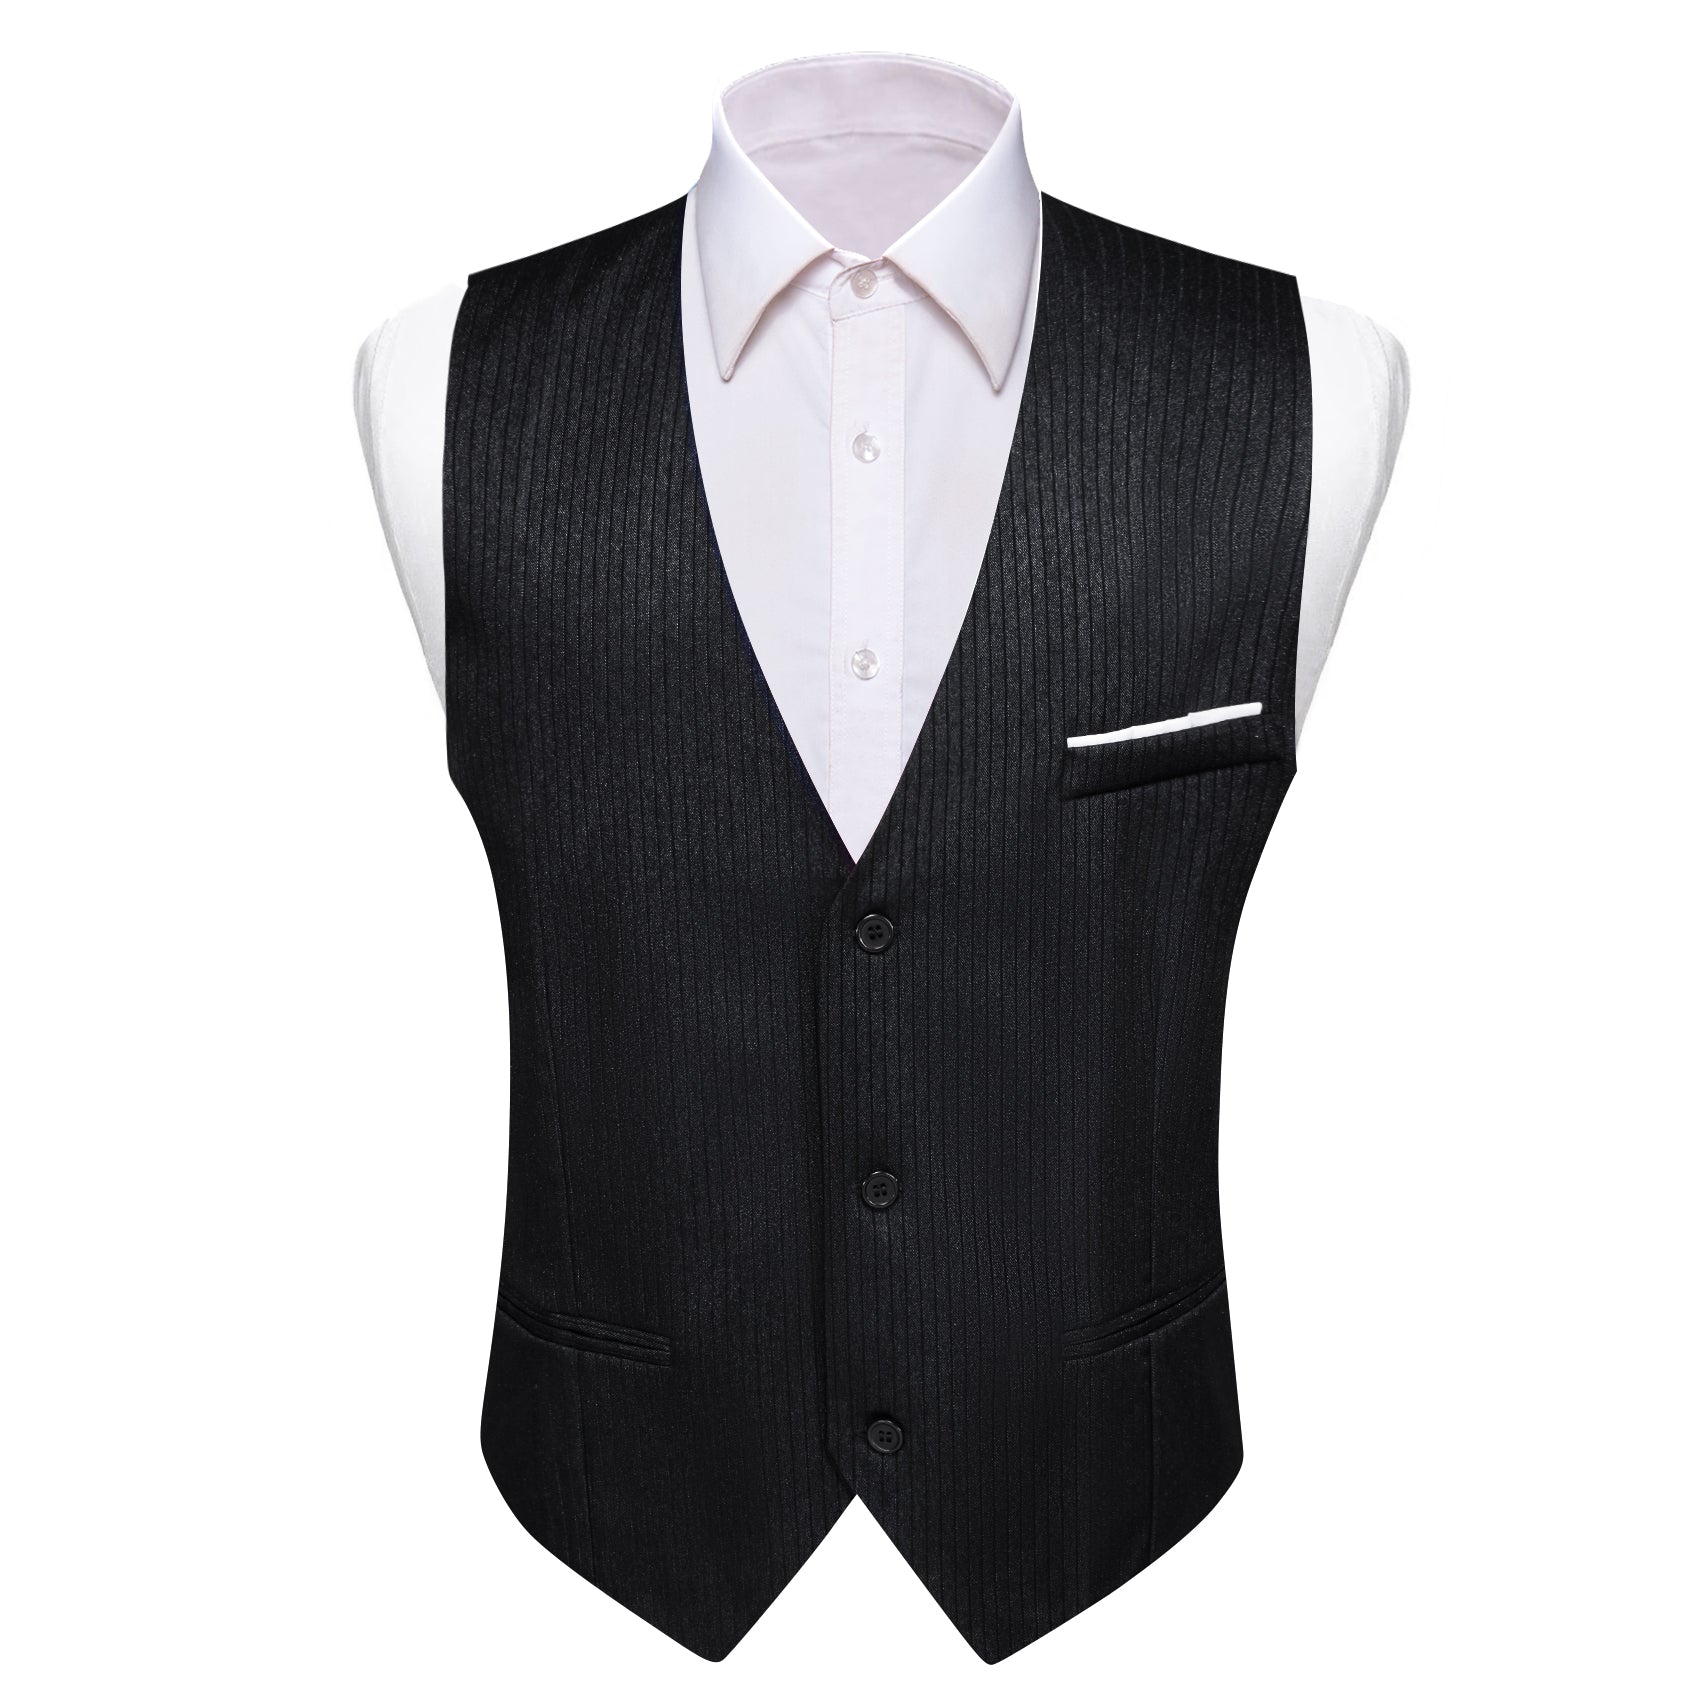 Barry.wang Black Solid Business Vest Suit